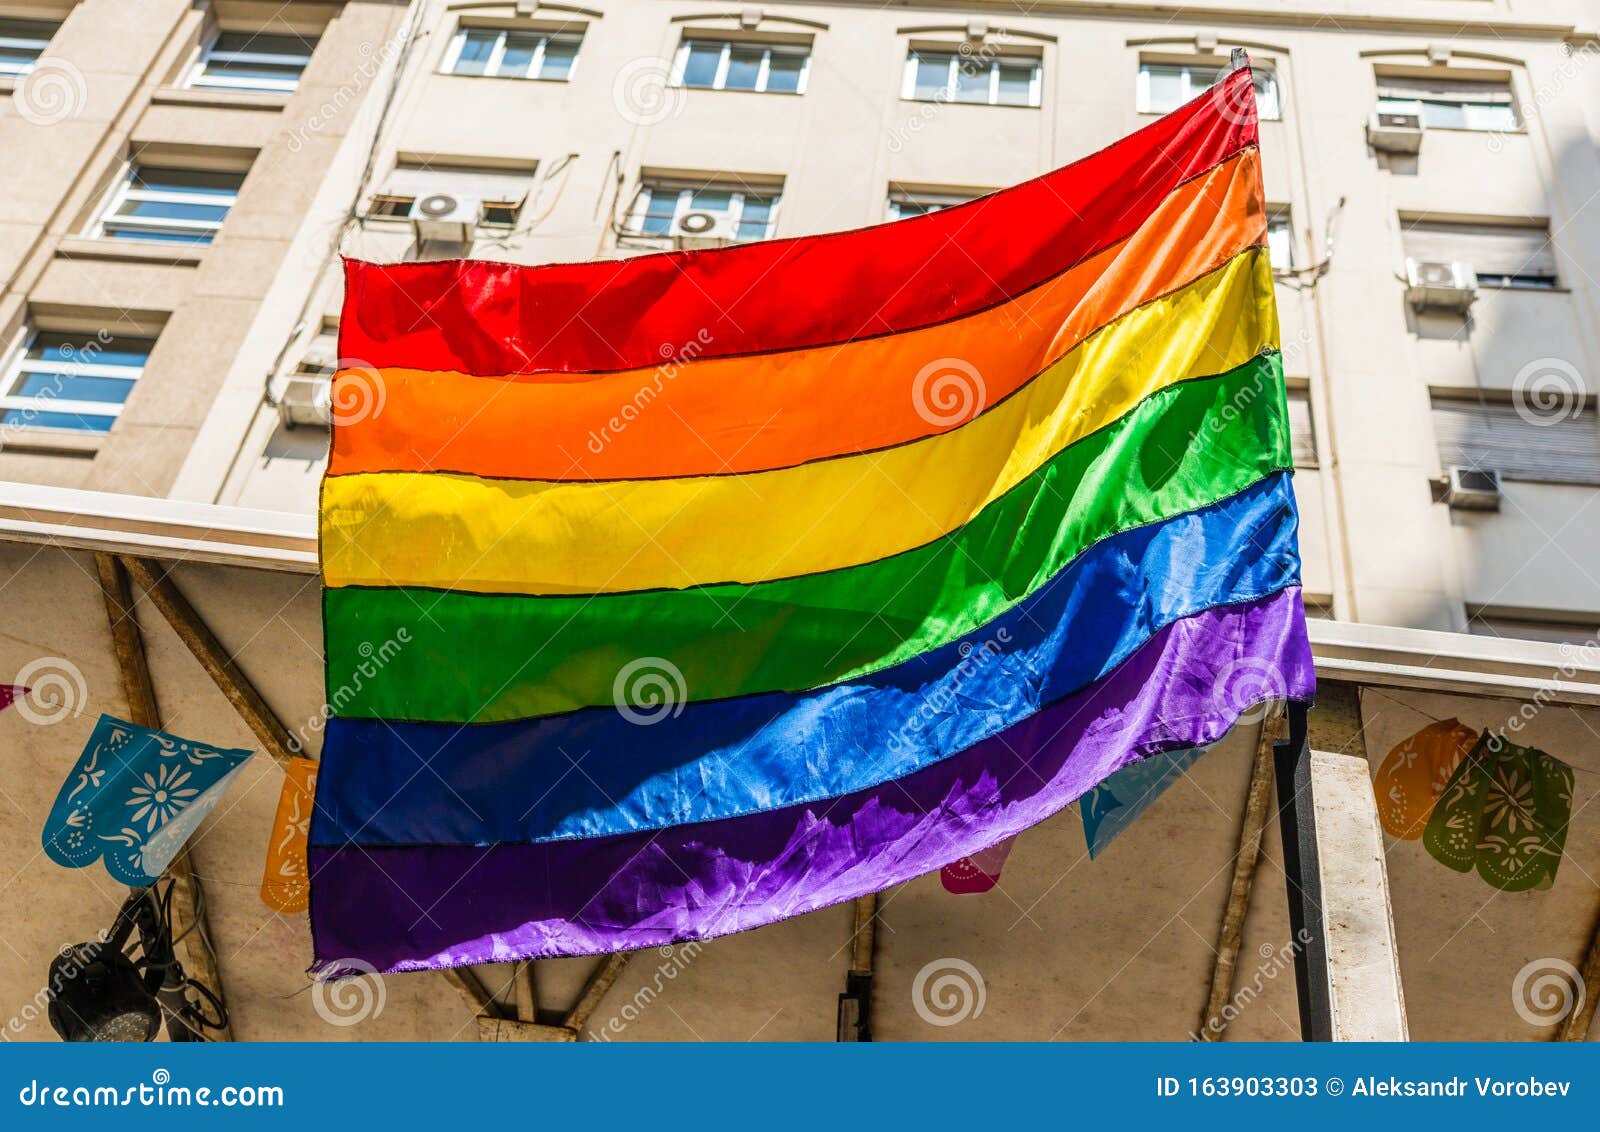 rainbow flag at a pride day gay, lesbian, and lgbt parade.